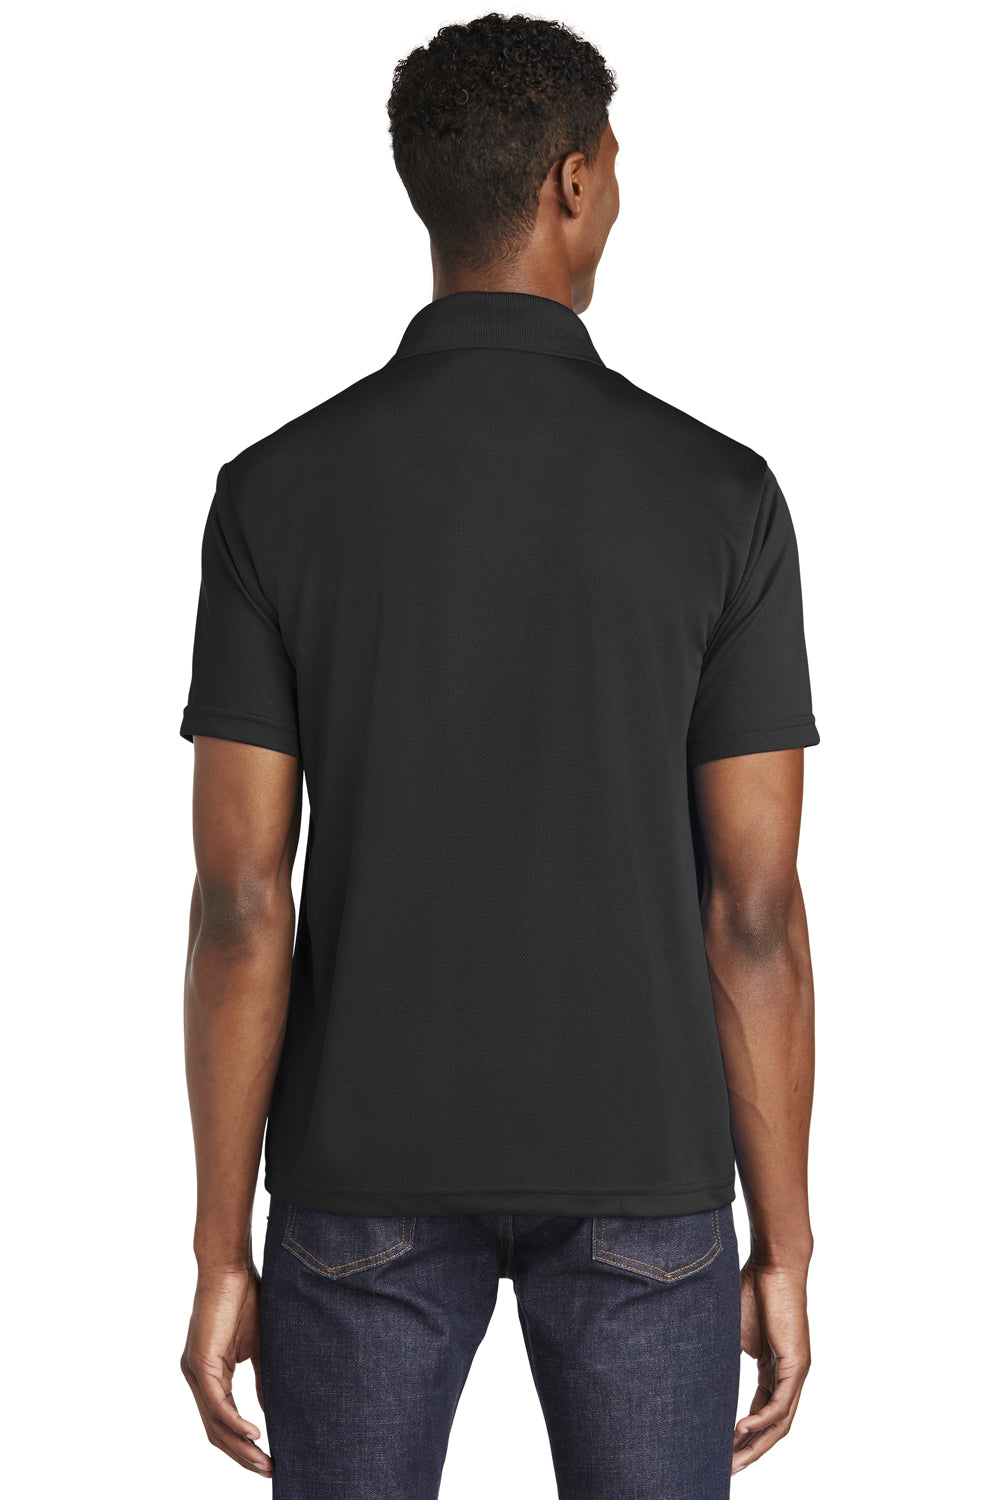 Sport-Tek ST640 Mens RacerMesh Moisture Wicking Short Sleeve Polo Shirt Black Back